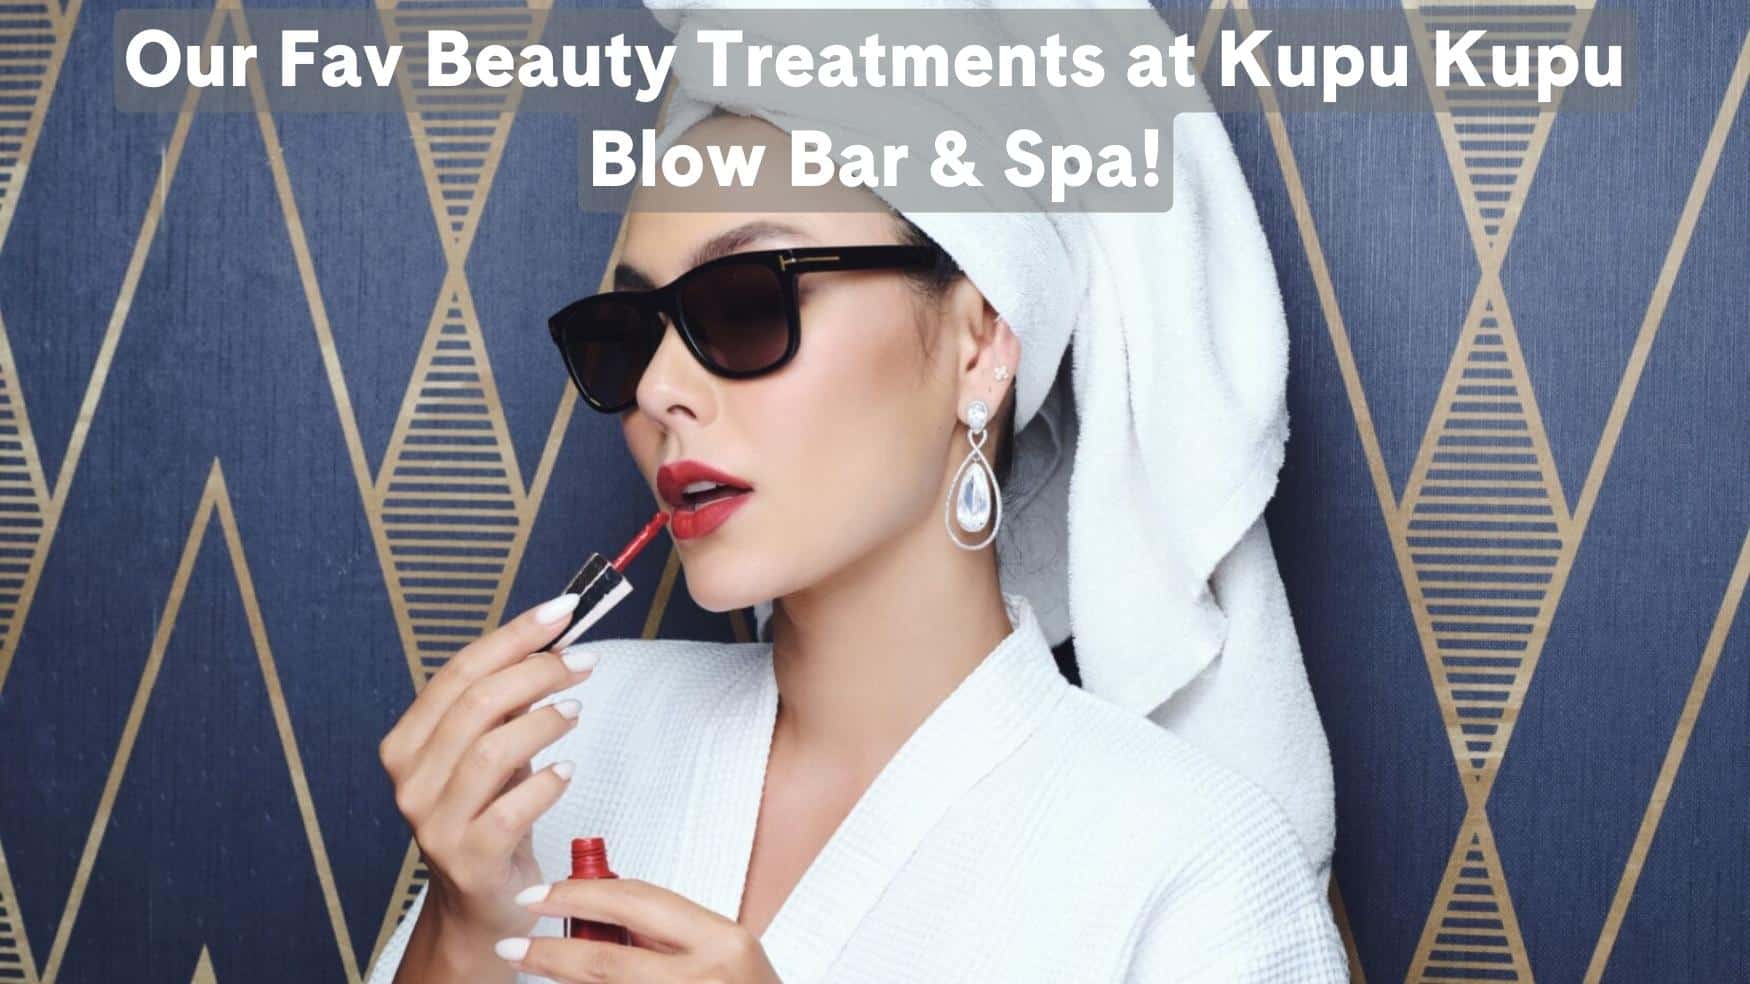 Fav Beauty Treatments at Kupu-Kupu Blow Bar, Salon, & Spa!